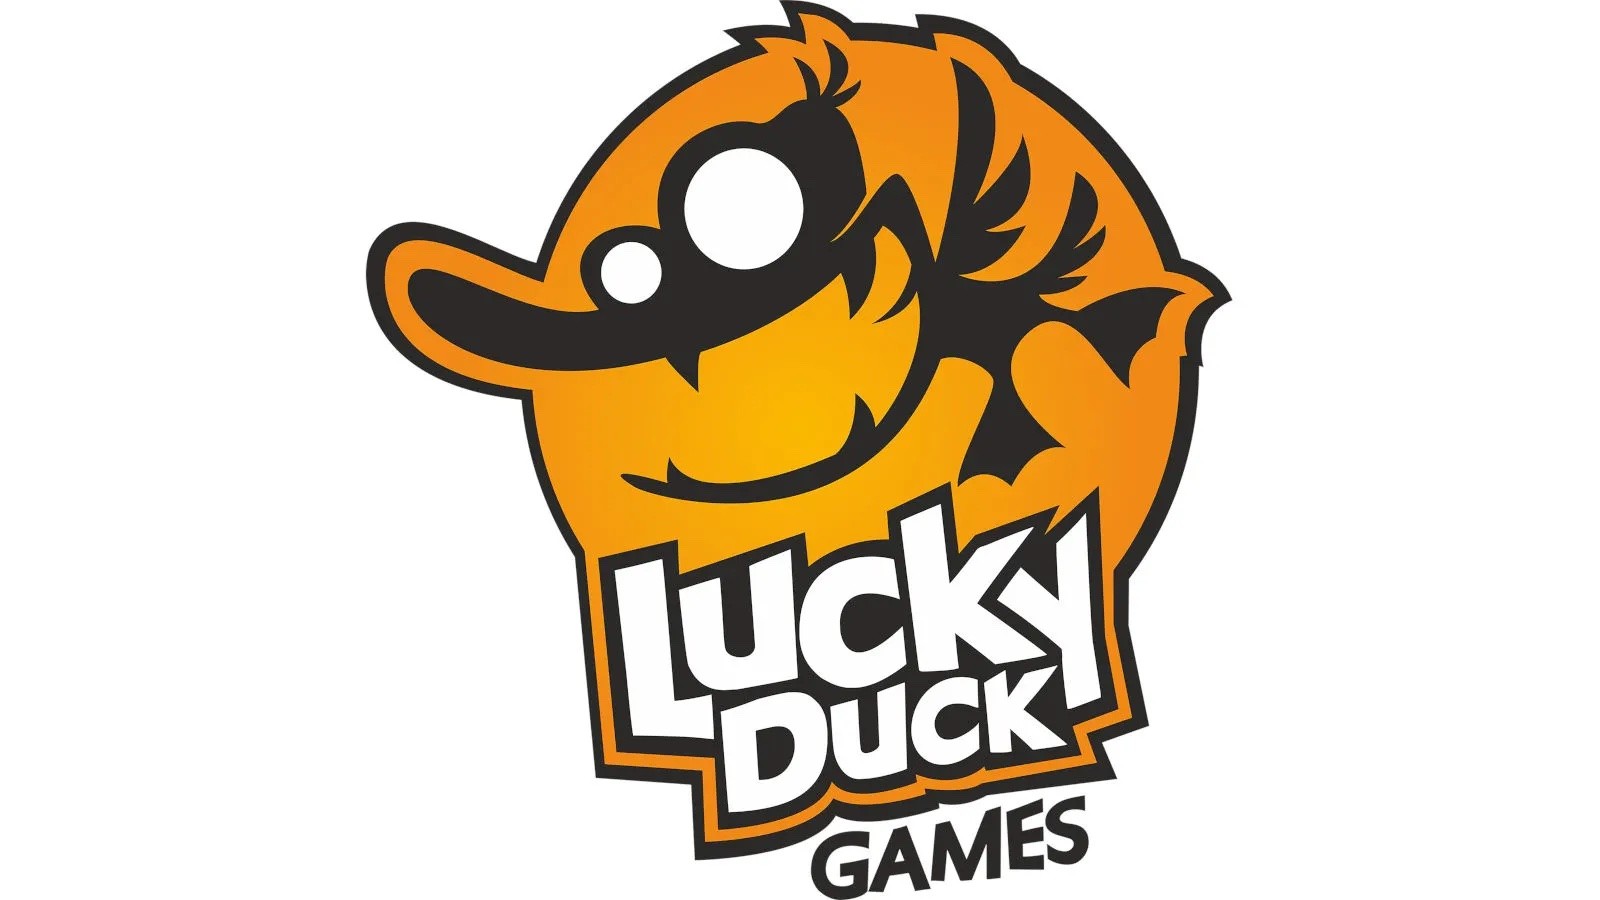 LUCKY DUCK GAMES